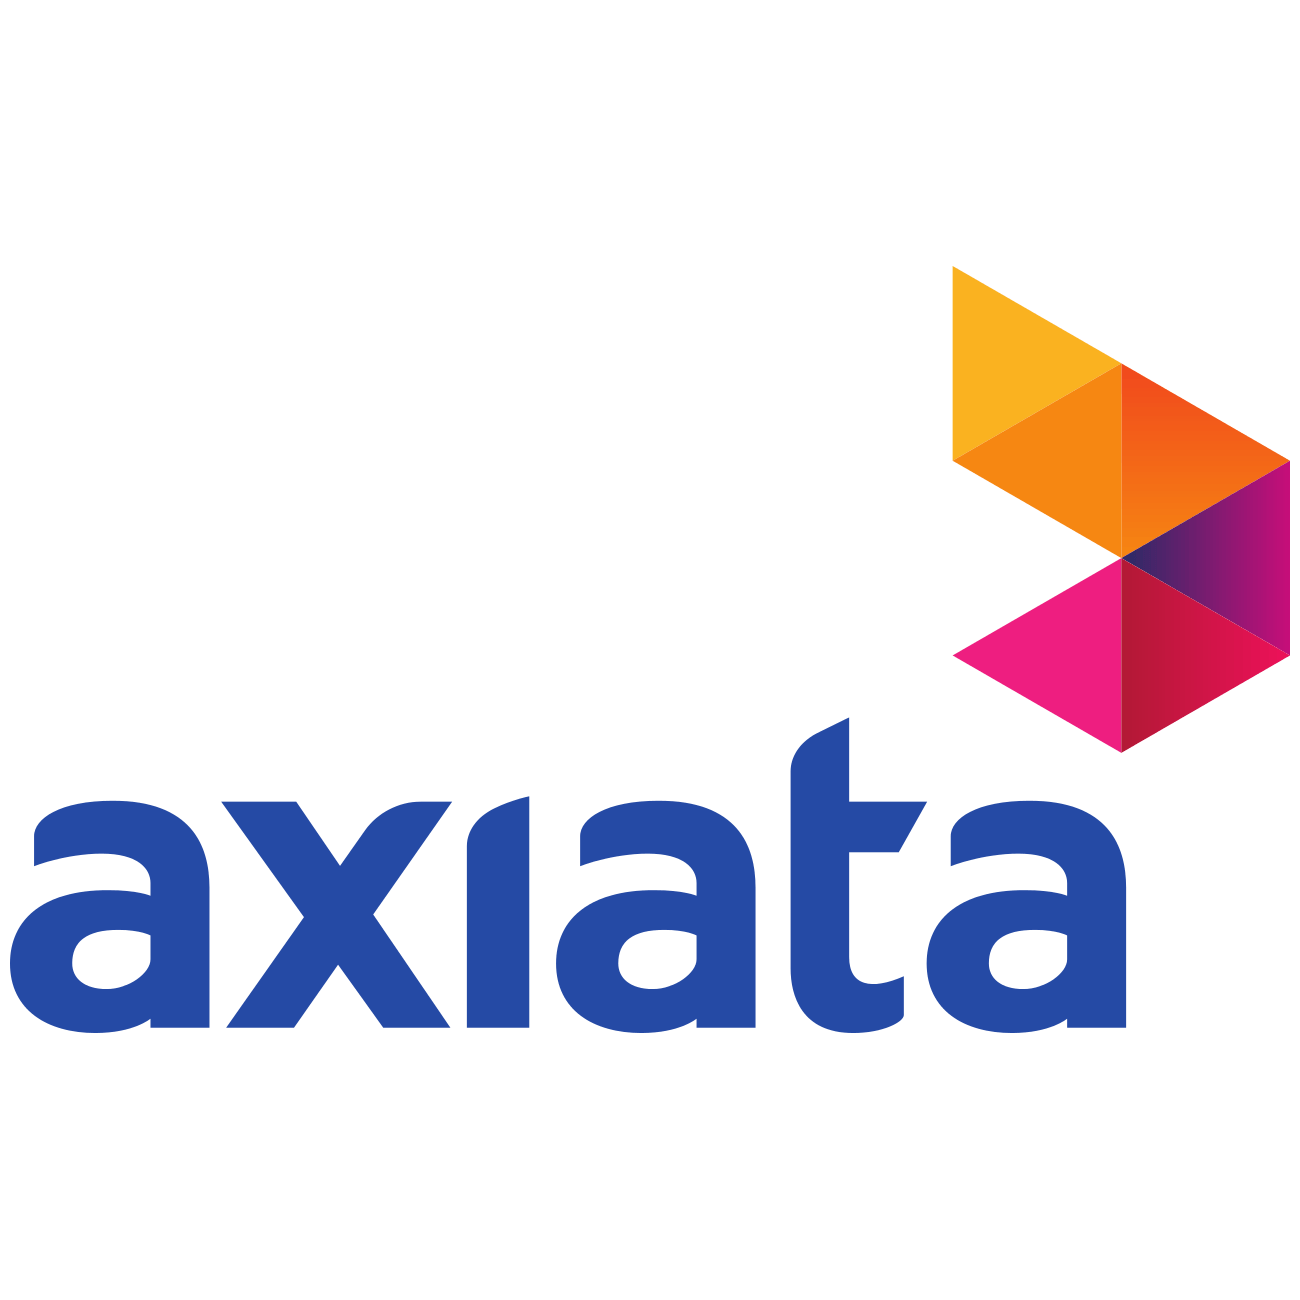 Axiata Logo - Axiata Group - Halberd Bastion